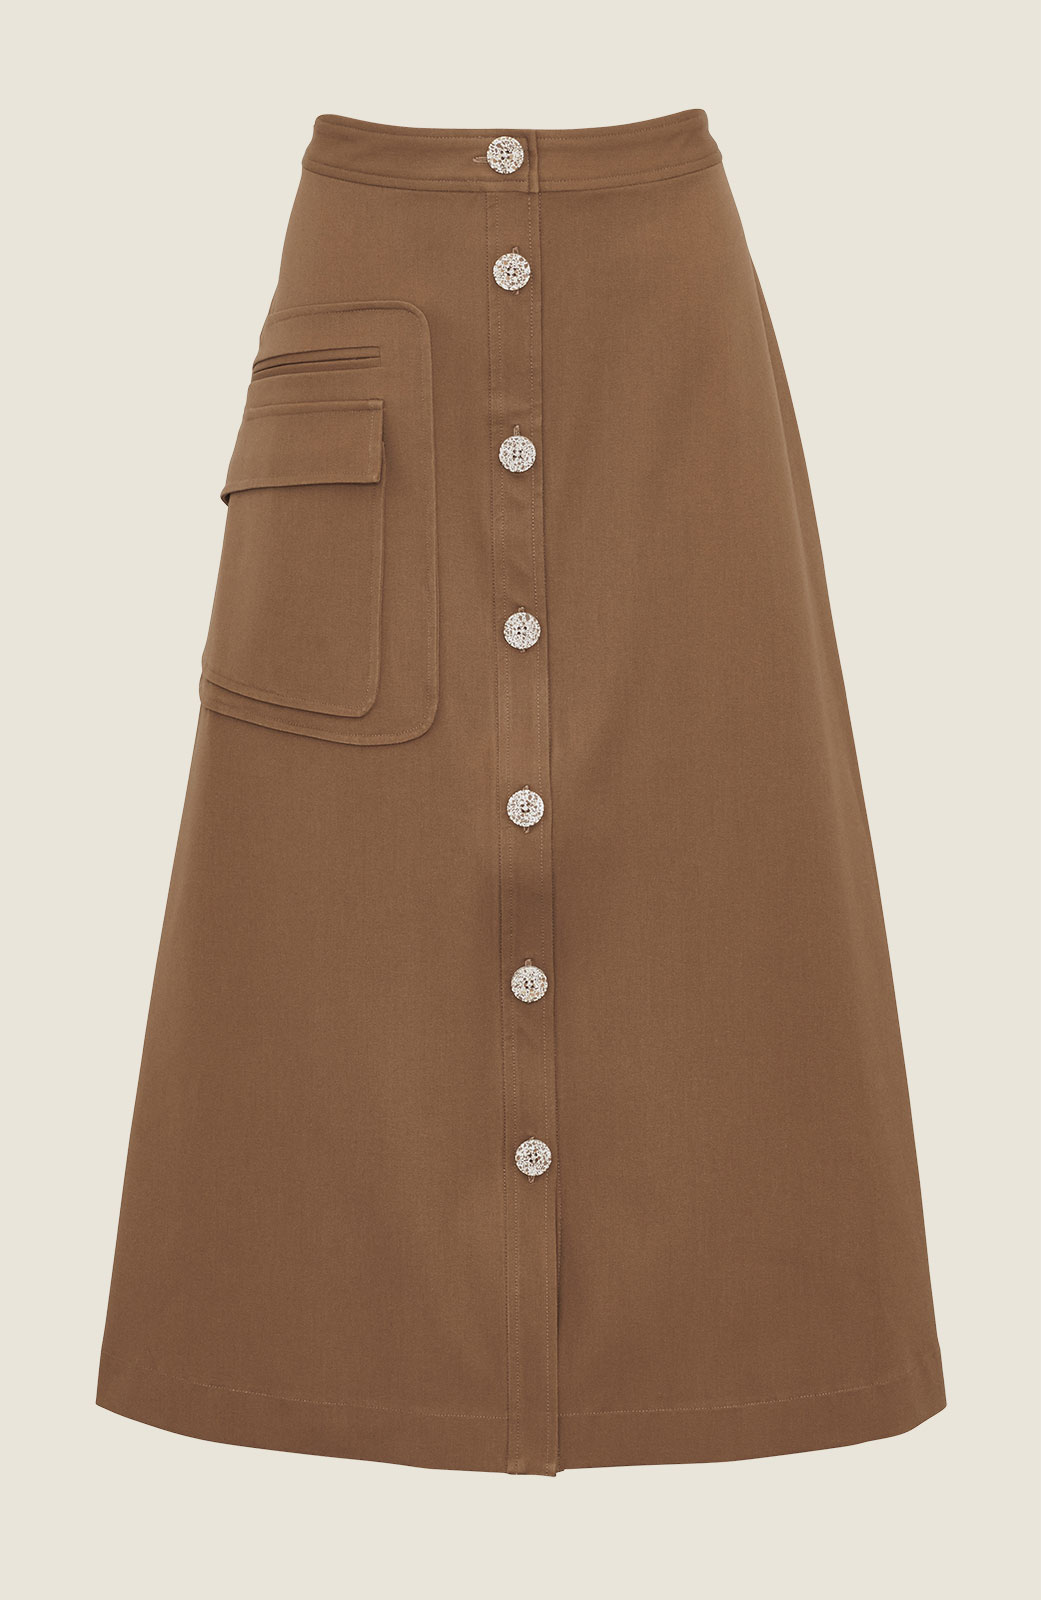 60s button down skirt